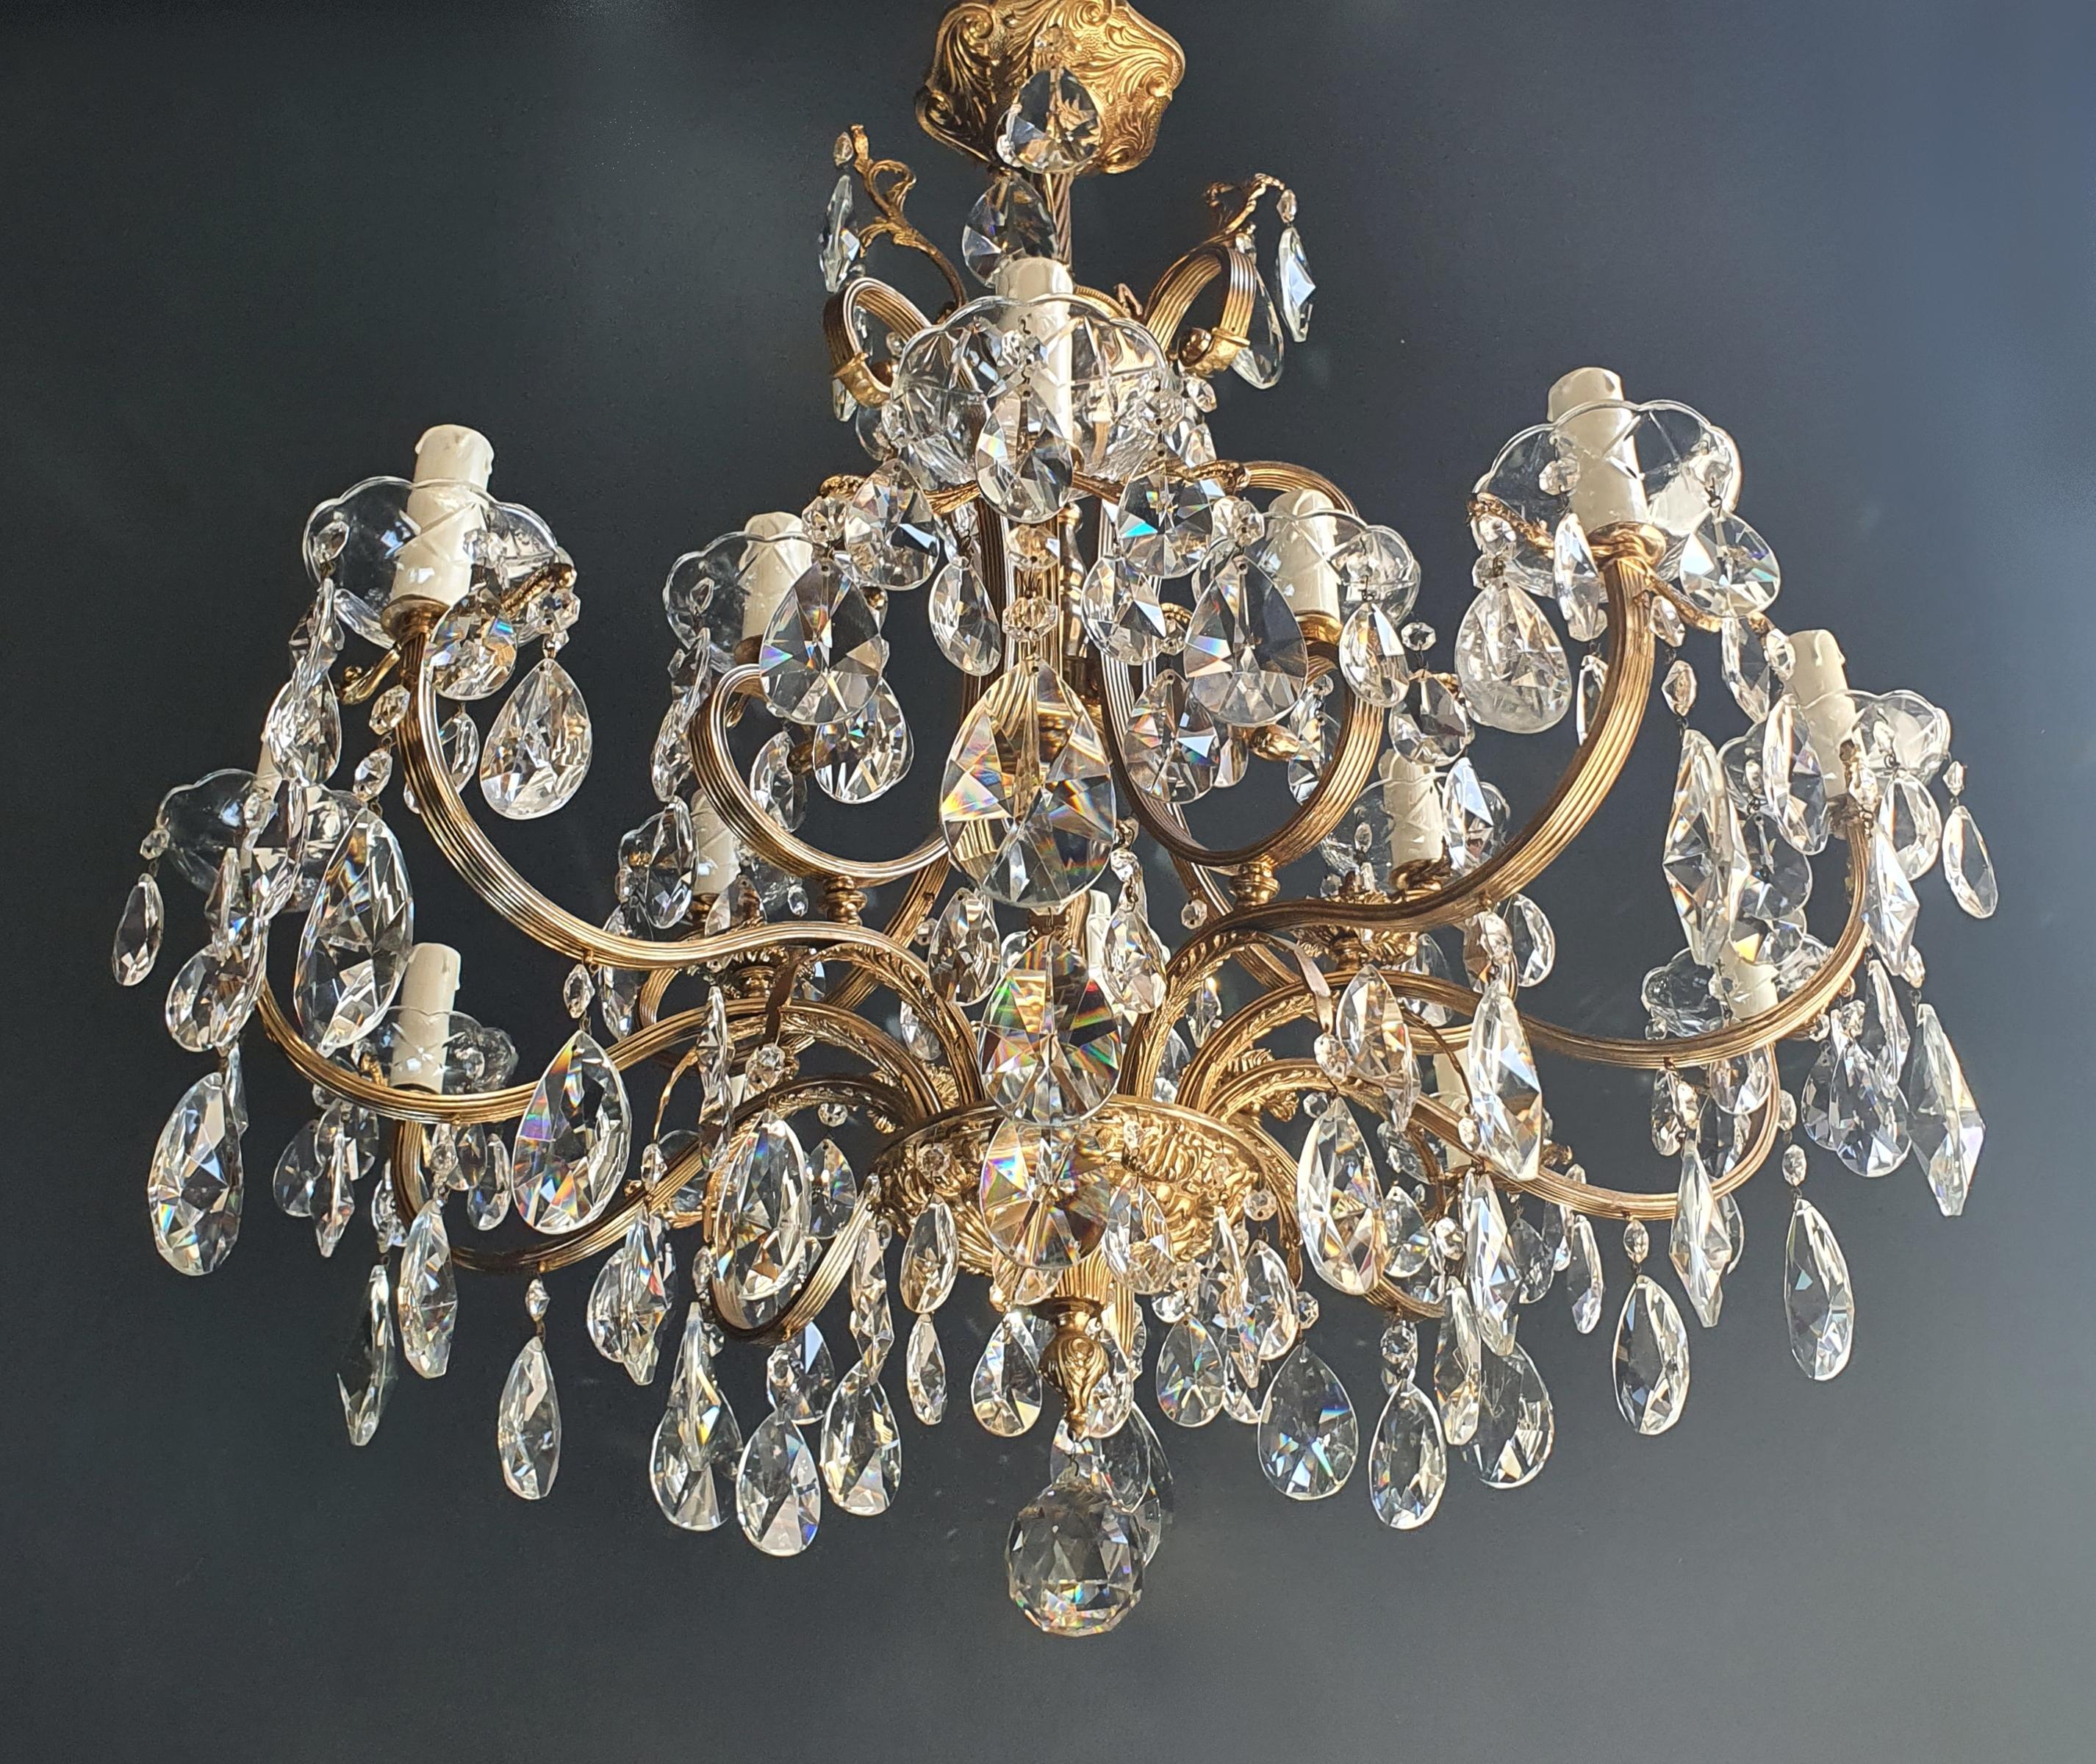 European Sparkle Crystal Brass Candelabrum Antique Chandelier Ceiling Lustre Art Nouveau